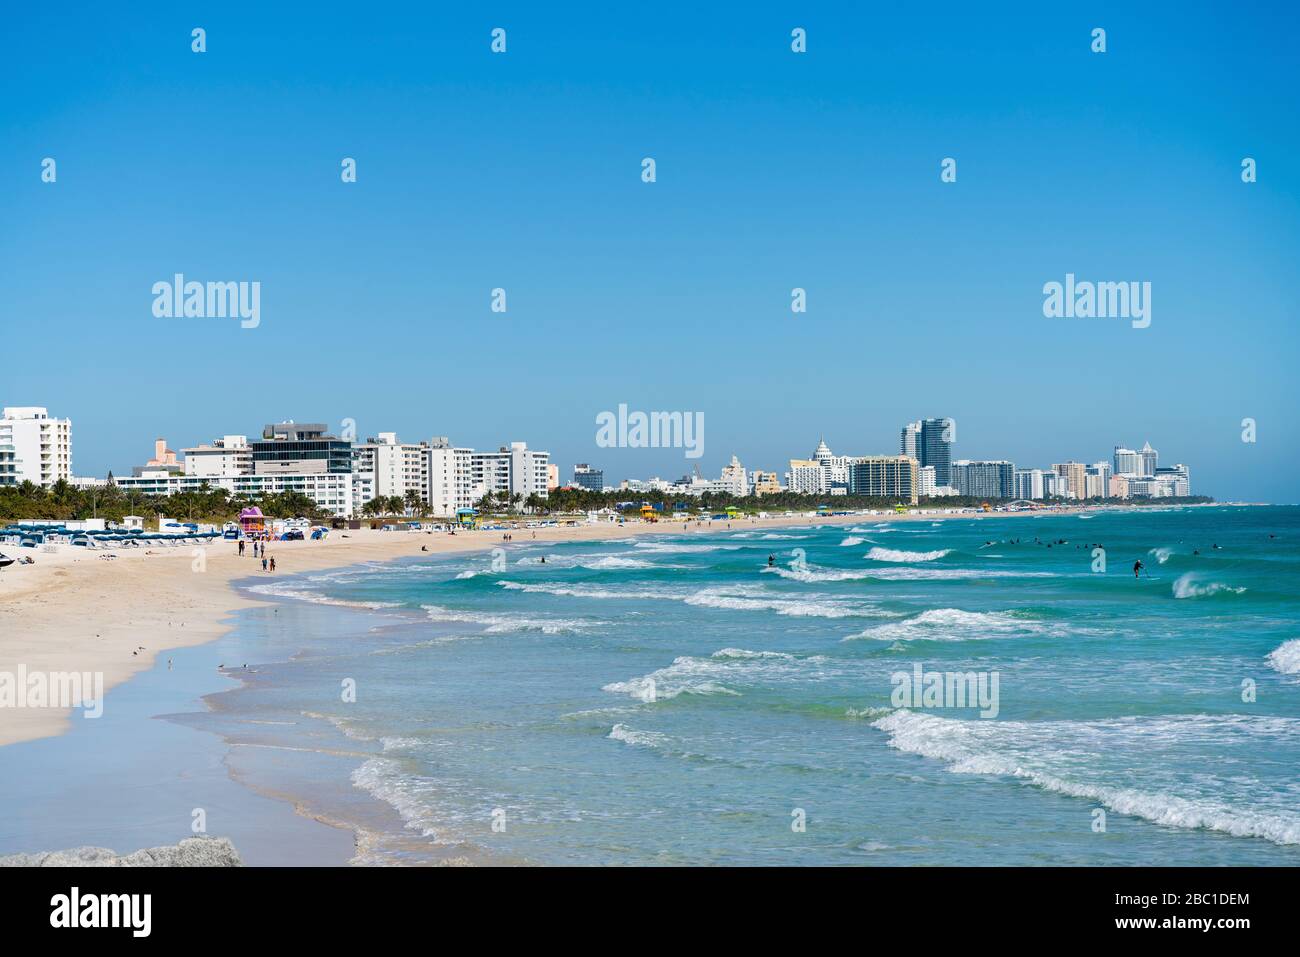 Miami Beach, Florida, USA Stock Photo